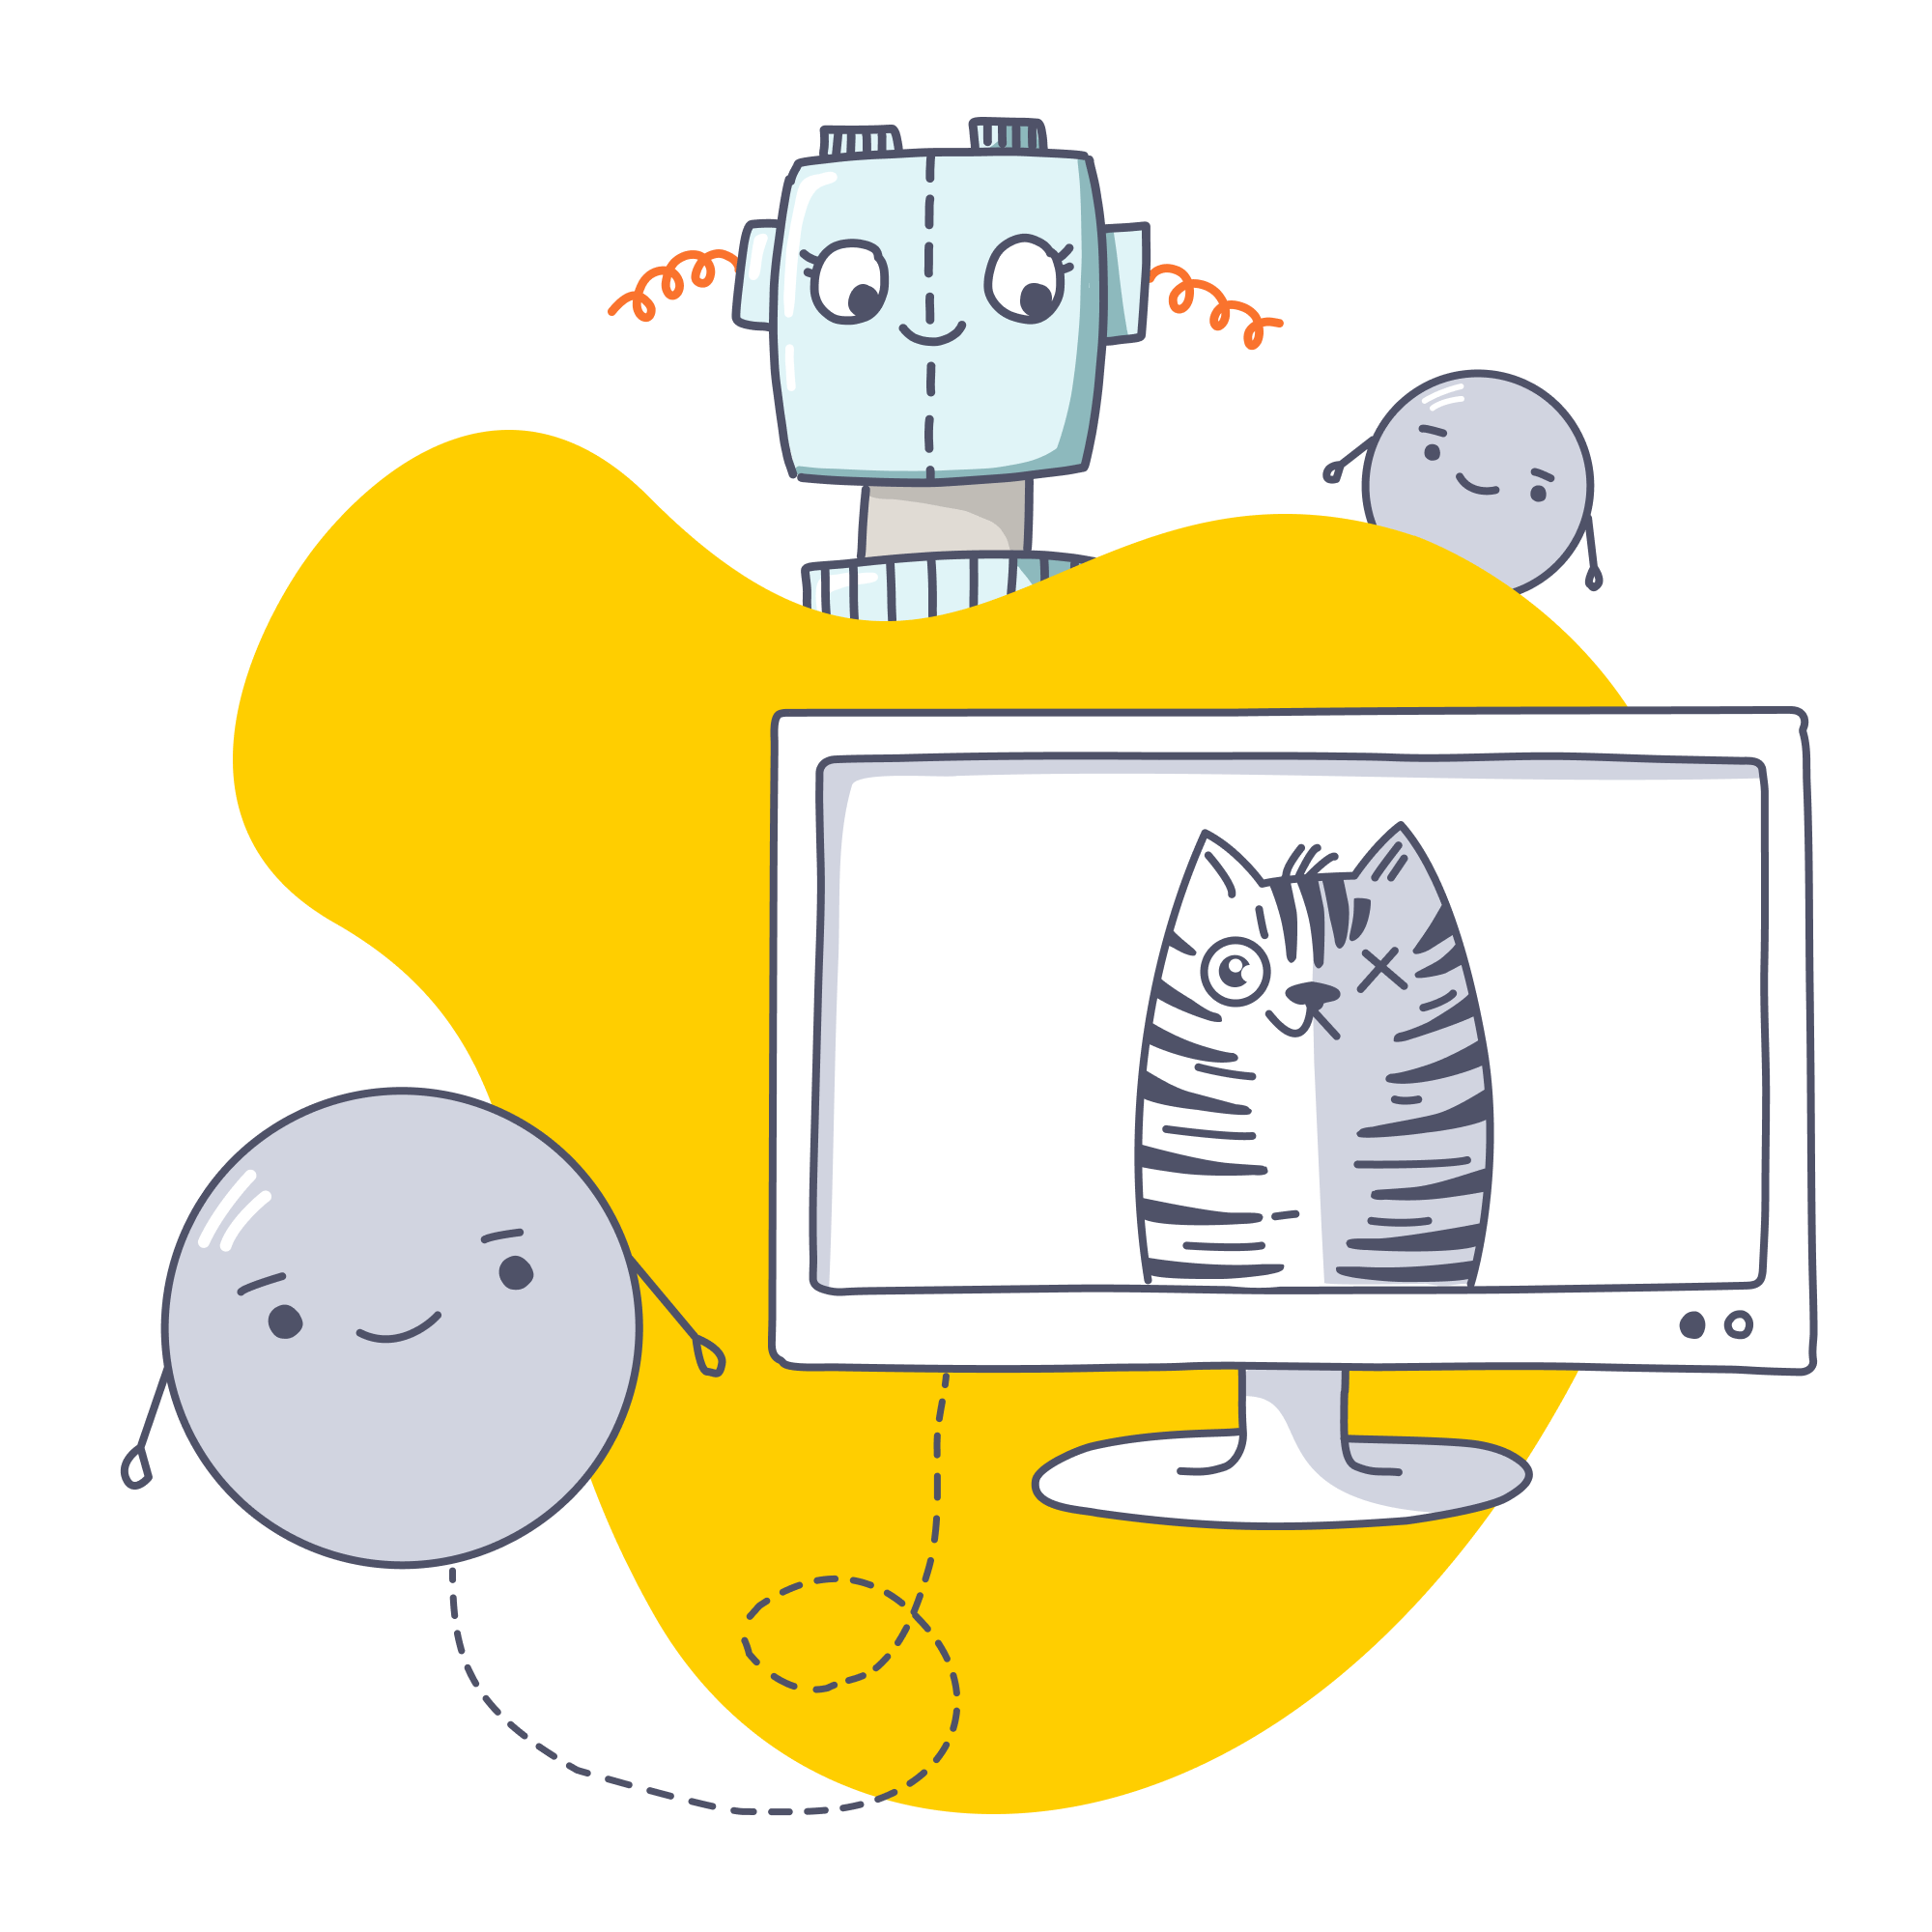 Header Quanten und KI, Illustration eines Roboters, der hinter einer gelben, organischen Form liegt, Quanten fliegen durch das Bild, Computer mit Katze auf dem Bildschirm